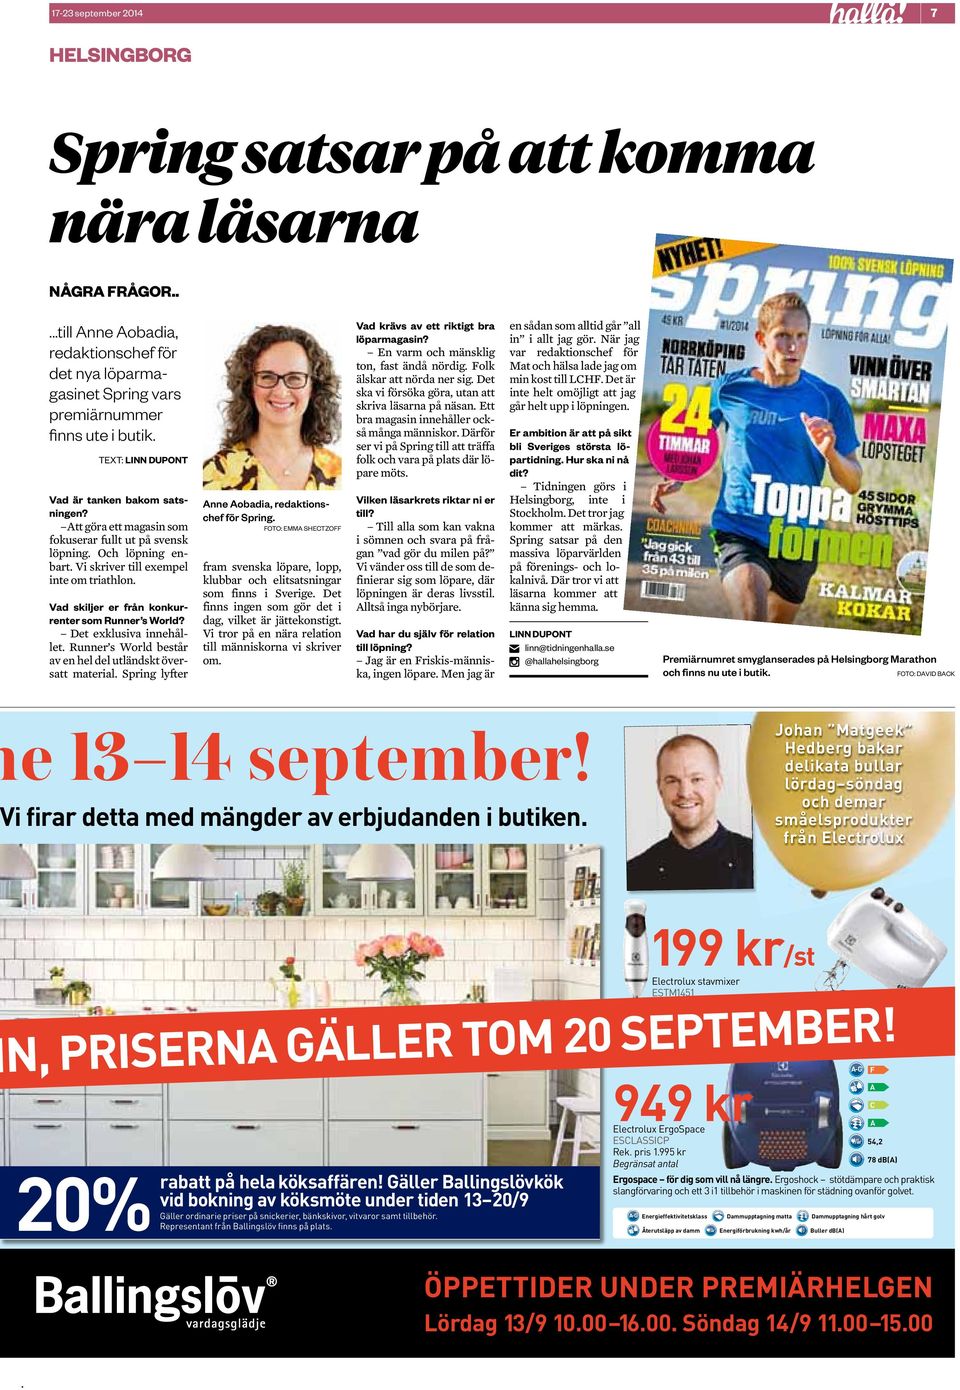 Att göra ett magasin som fokuserar fullt ut på svensk löpning Och löpning enbart Vi skriver till exempel inte om triathlon Vad skiljer er från konkurrenter som Runner s World?